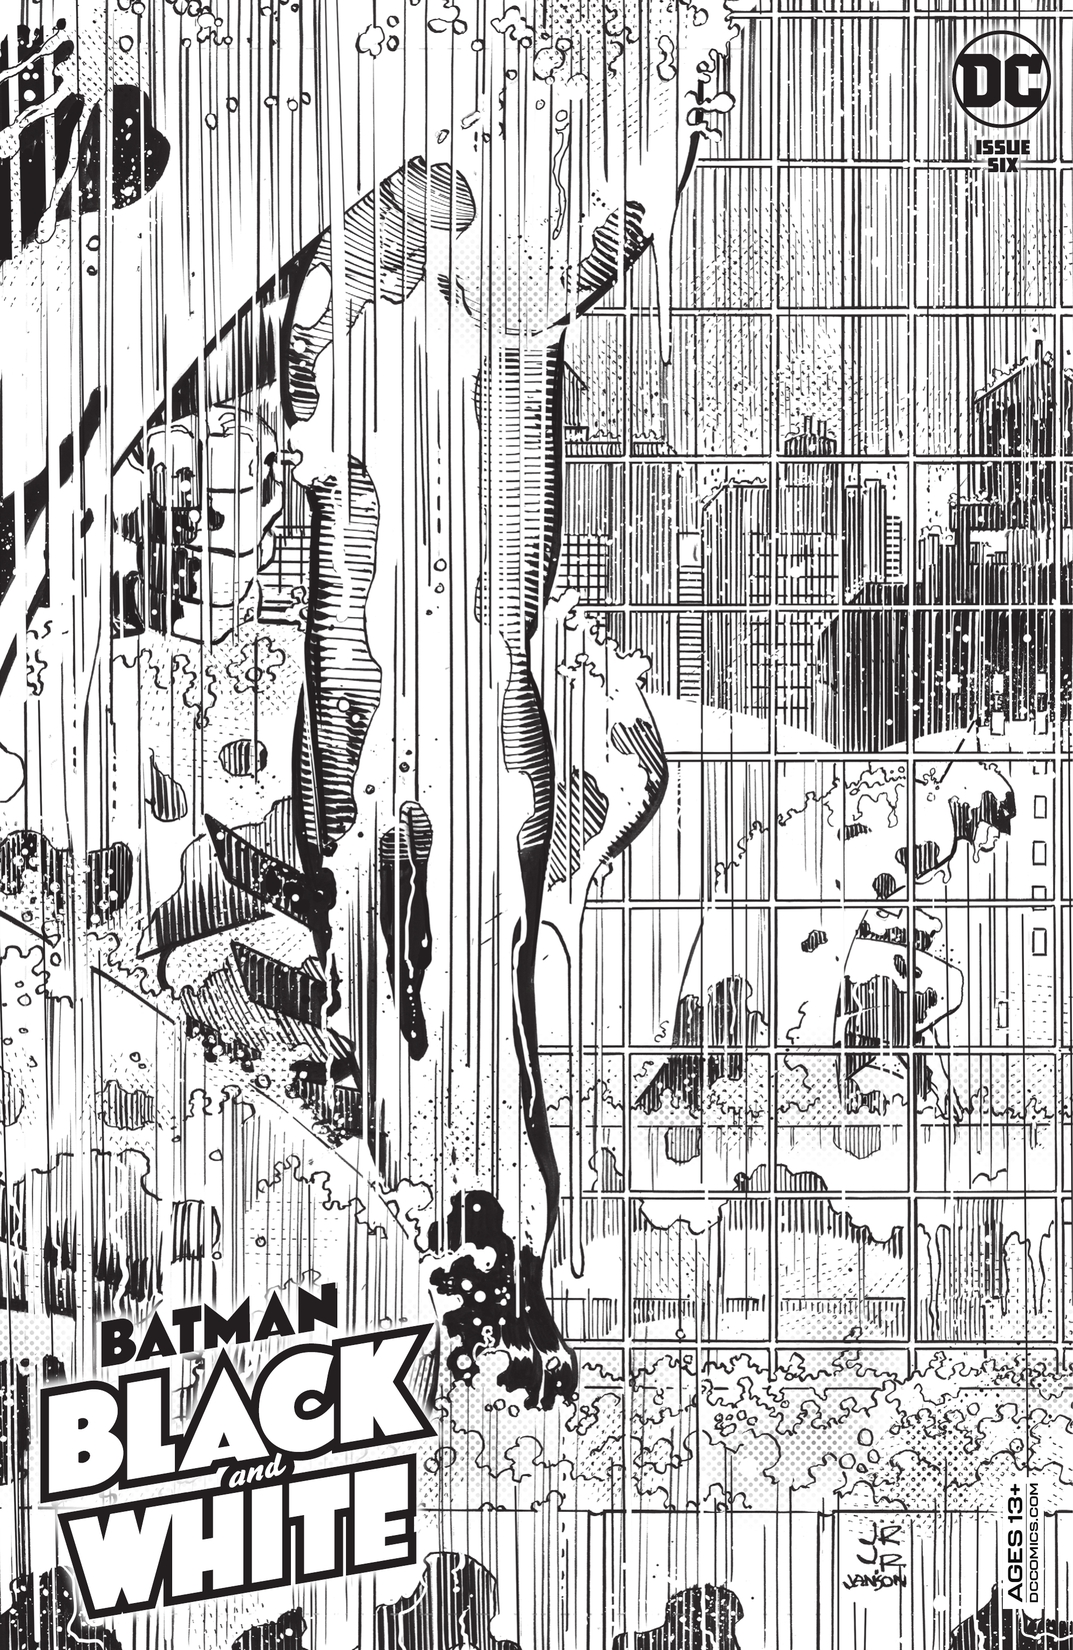 Batman Black & White (2020-) #6 preview images